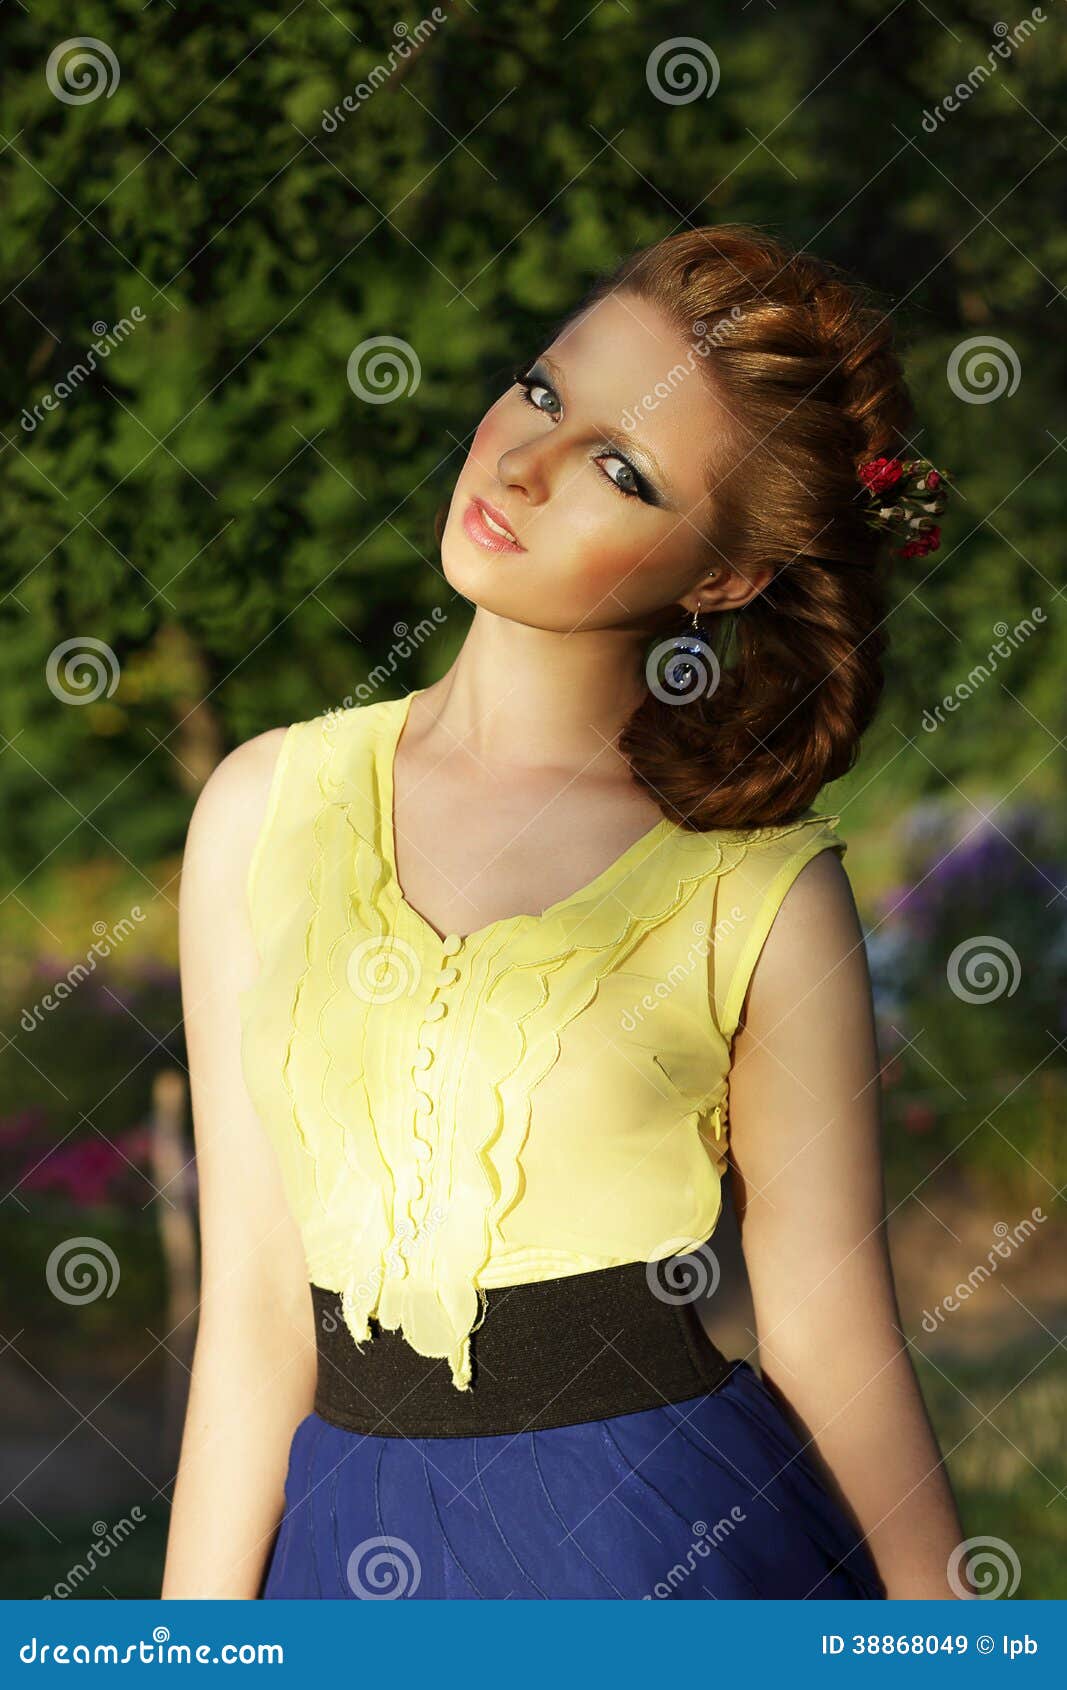 pretty girl in sleeveless sundress outdoors